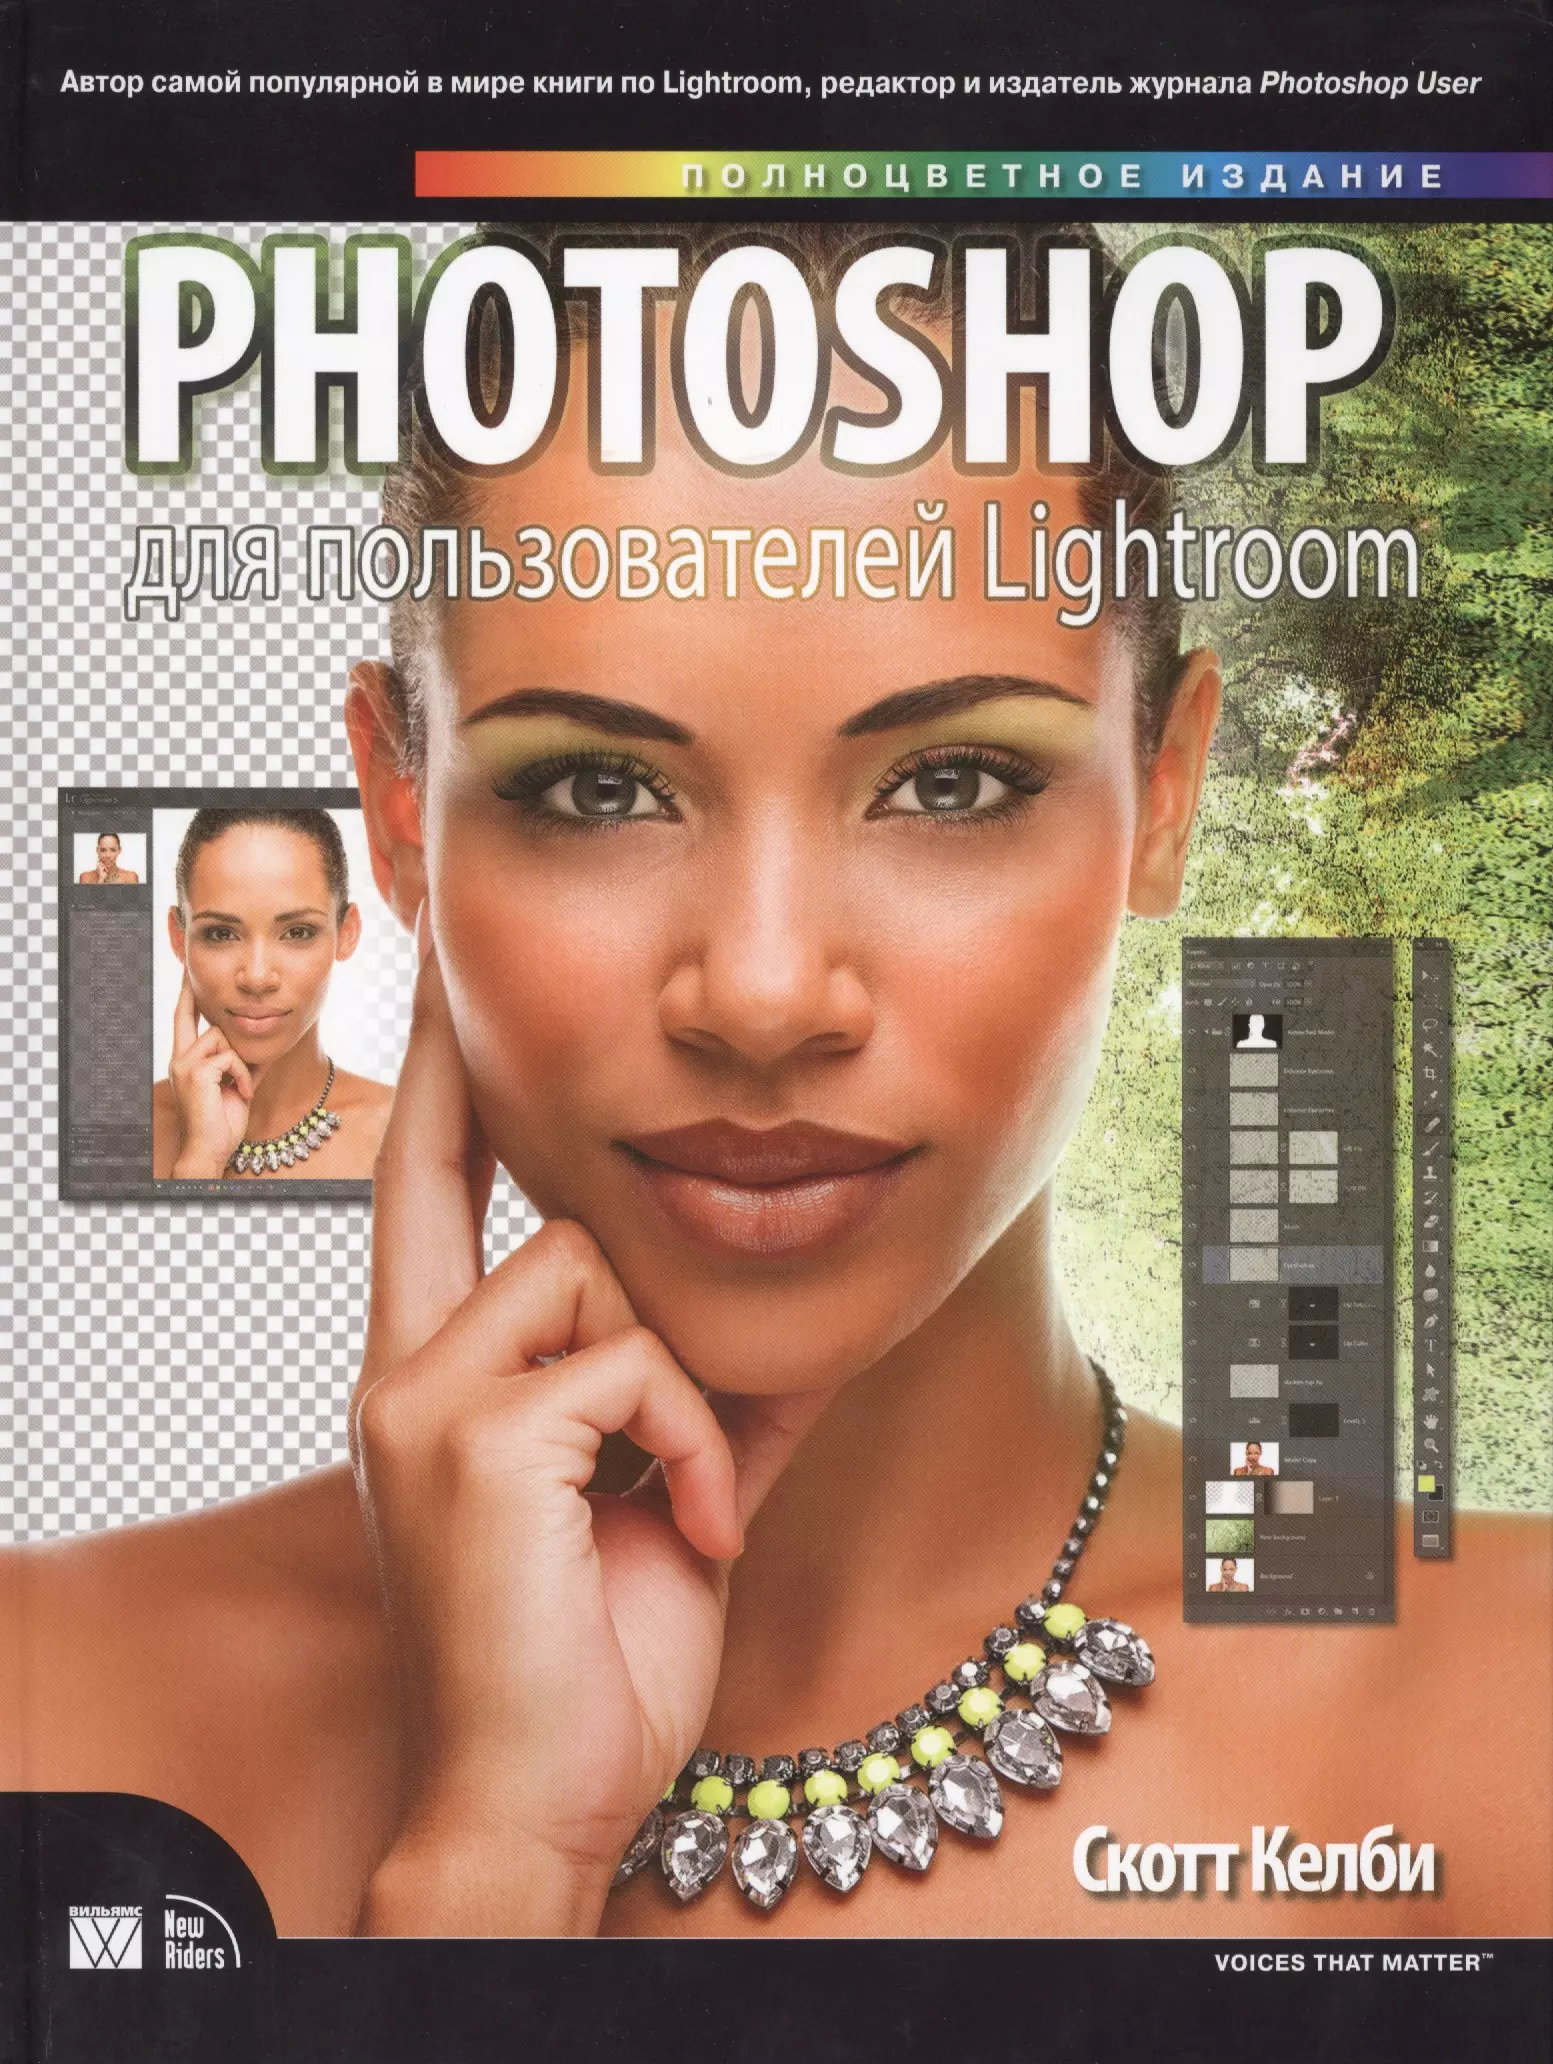 photoshop 2023 Келби Скотт Photoshop для пользователей Lightroom